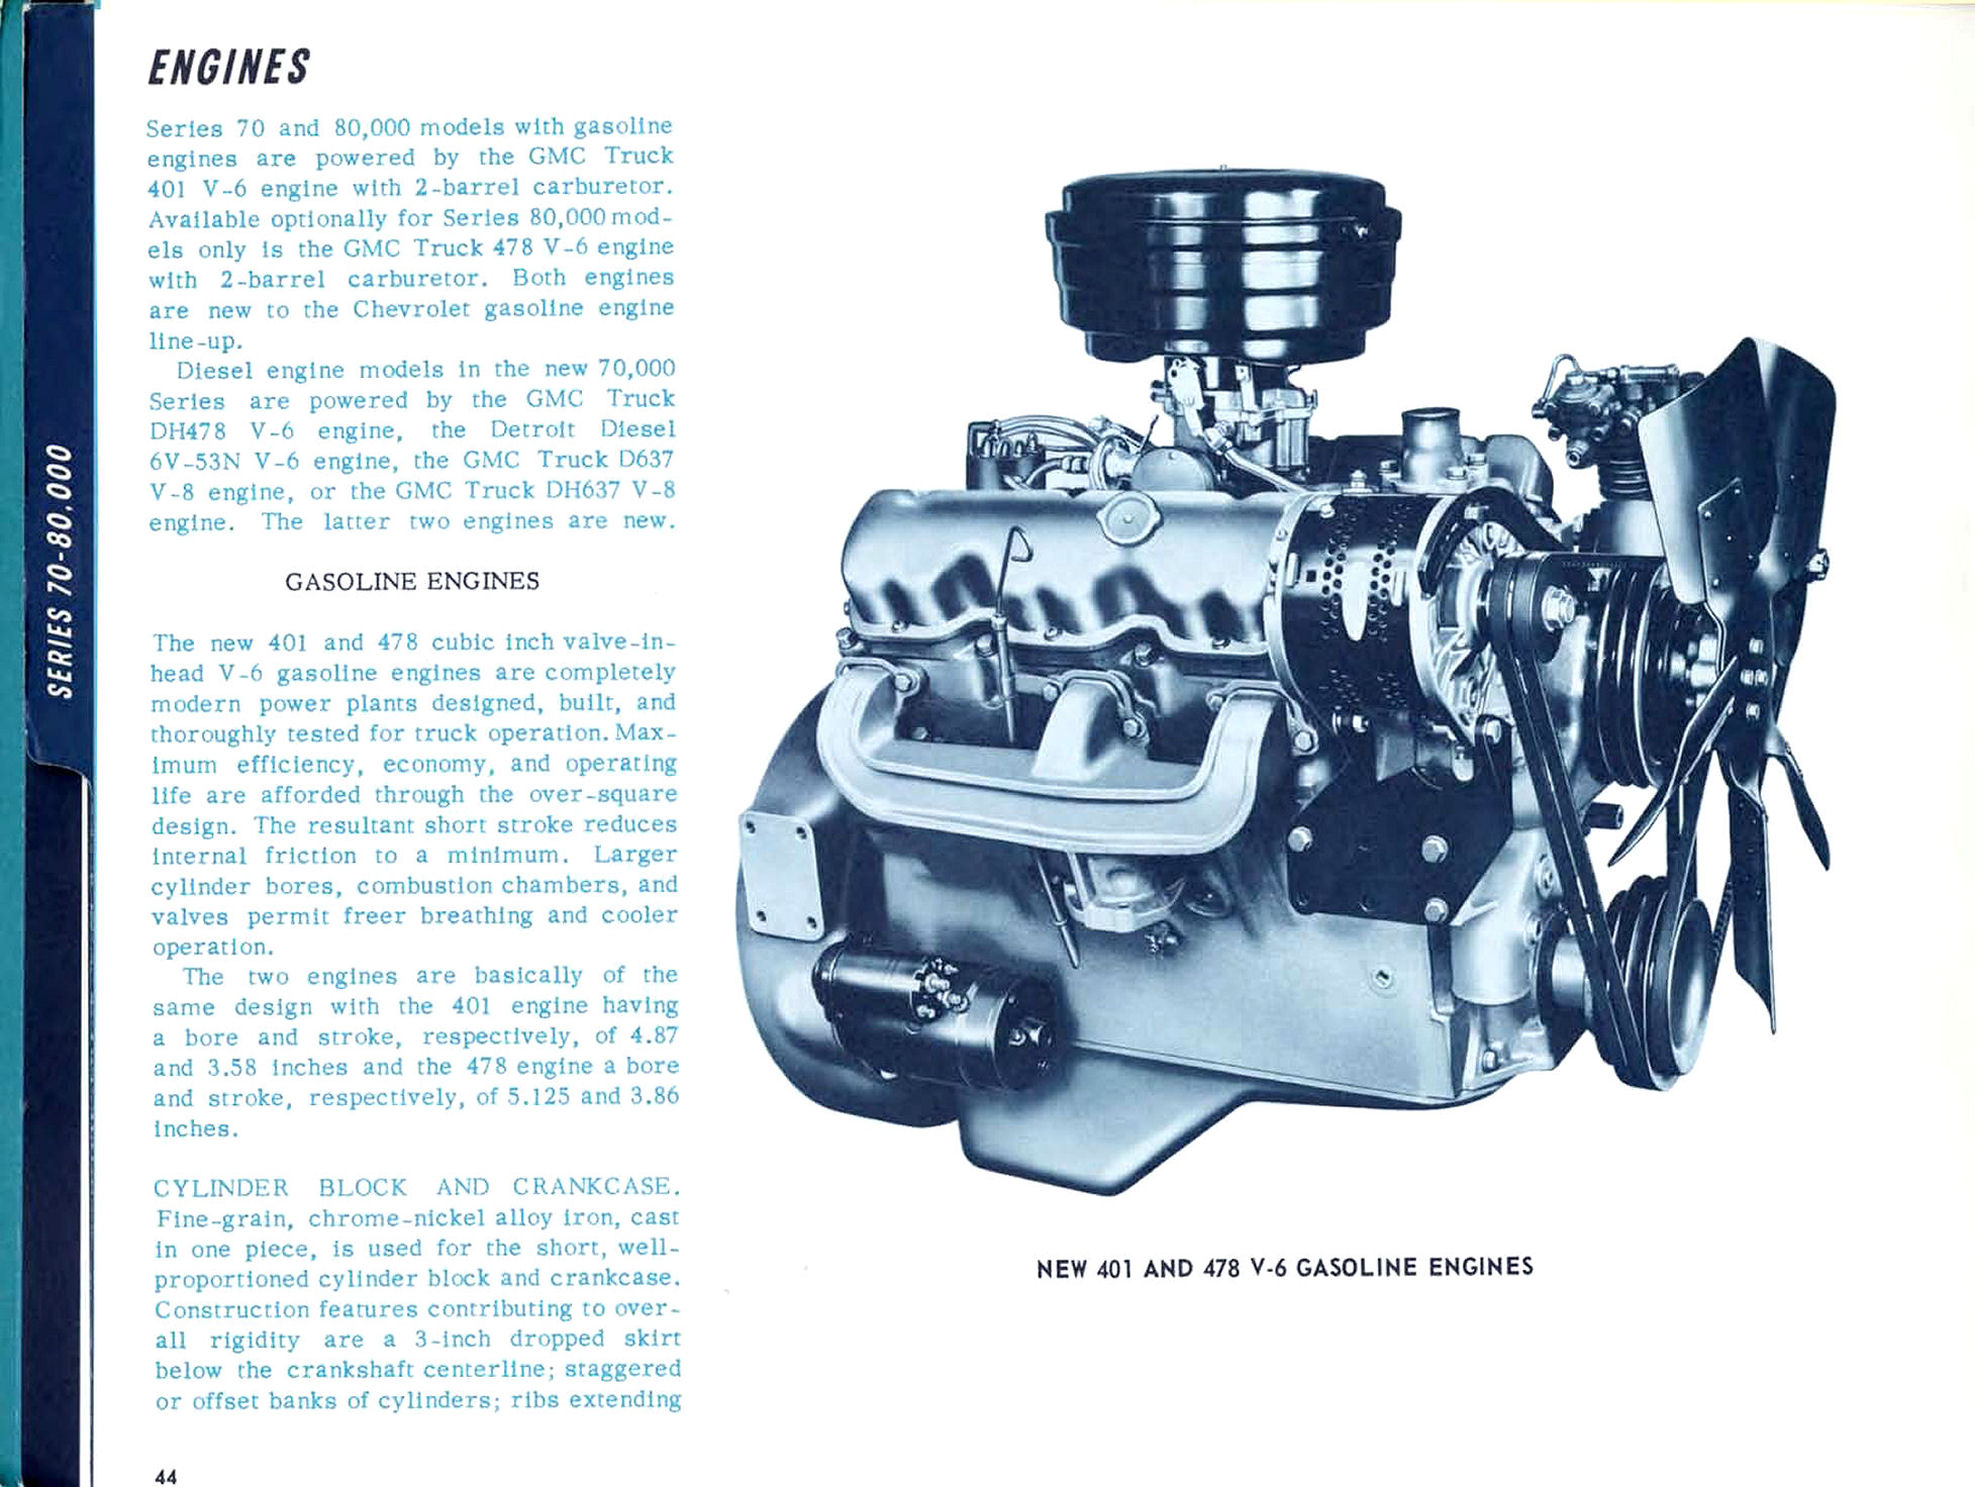 1966_Chevrolet_Trucks_Engineering_Features-44